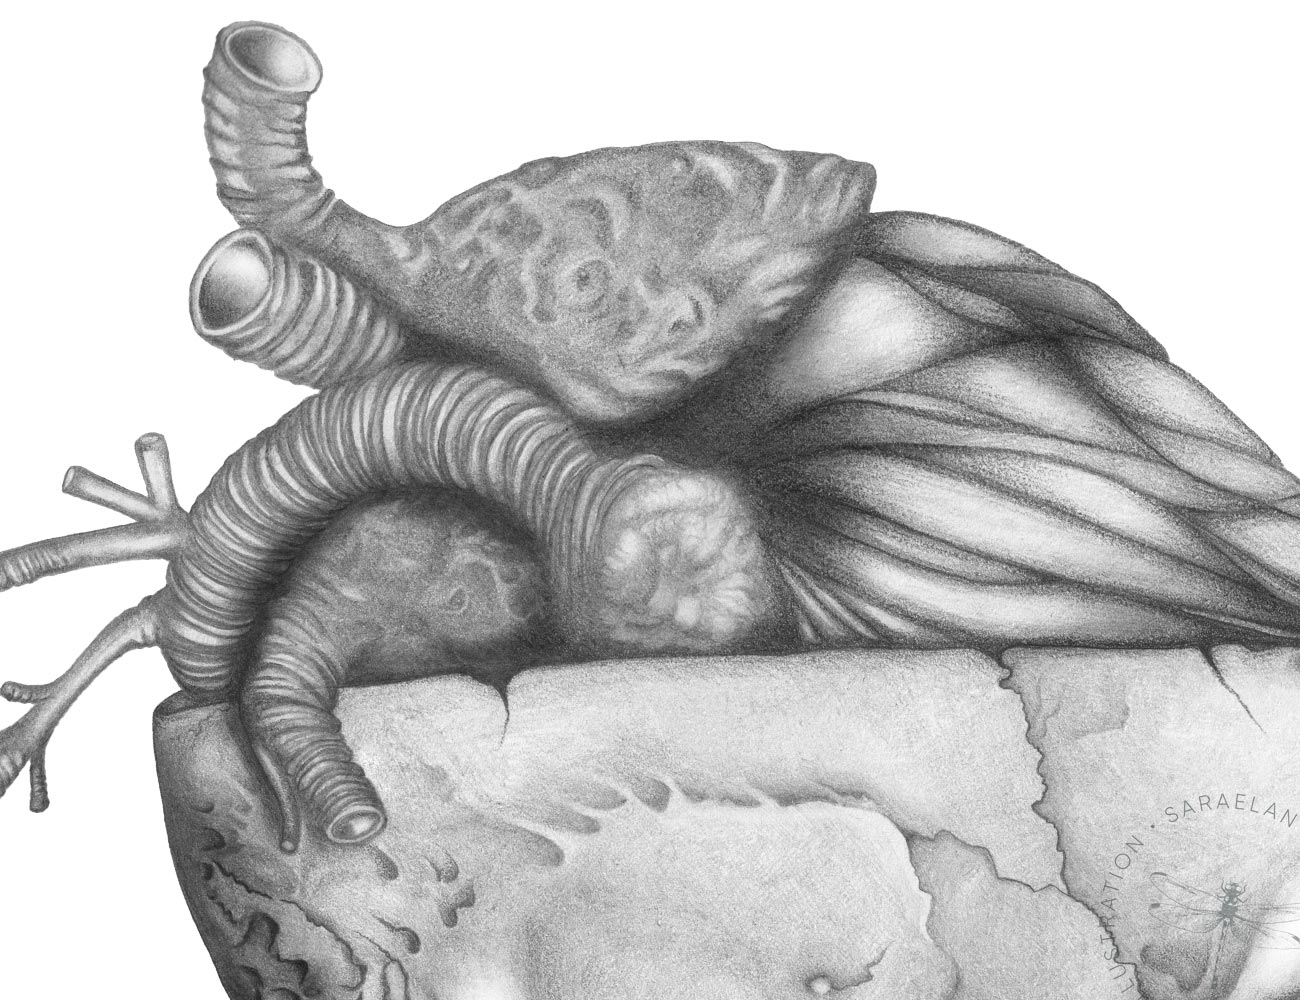 Lezioni Di Anatomia Amore Teschio Con Cuore Anatomico Disegnato A Matita Disegni E Illustrazioni Di Sara Elan Donati Saraelan Illustration Saraelan Illustration